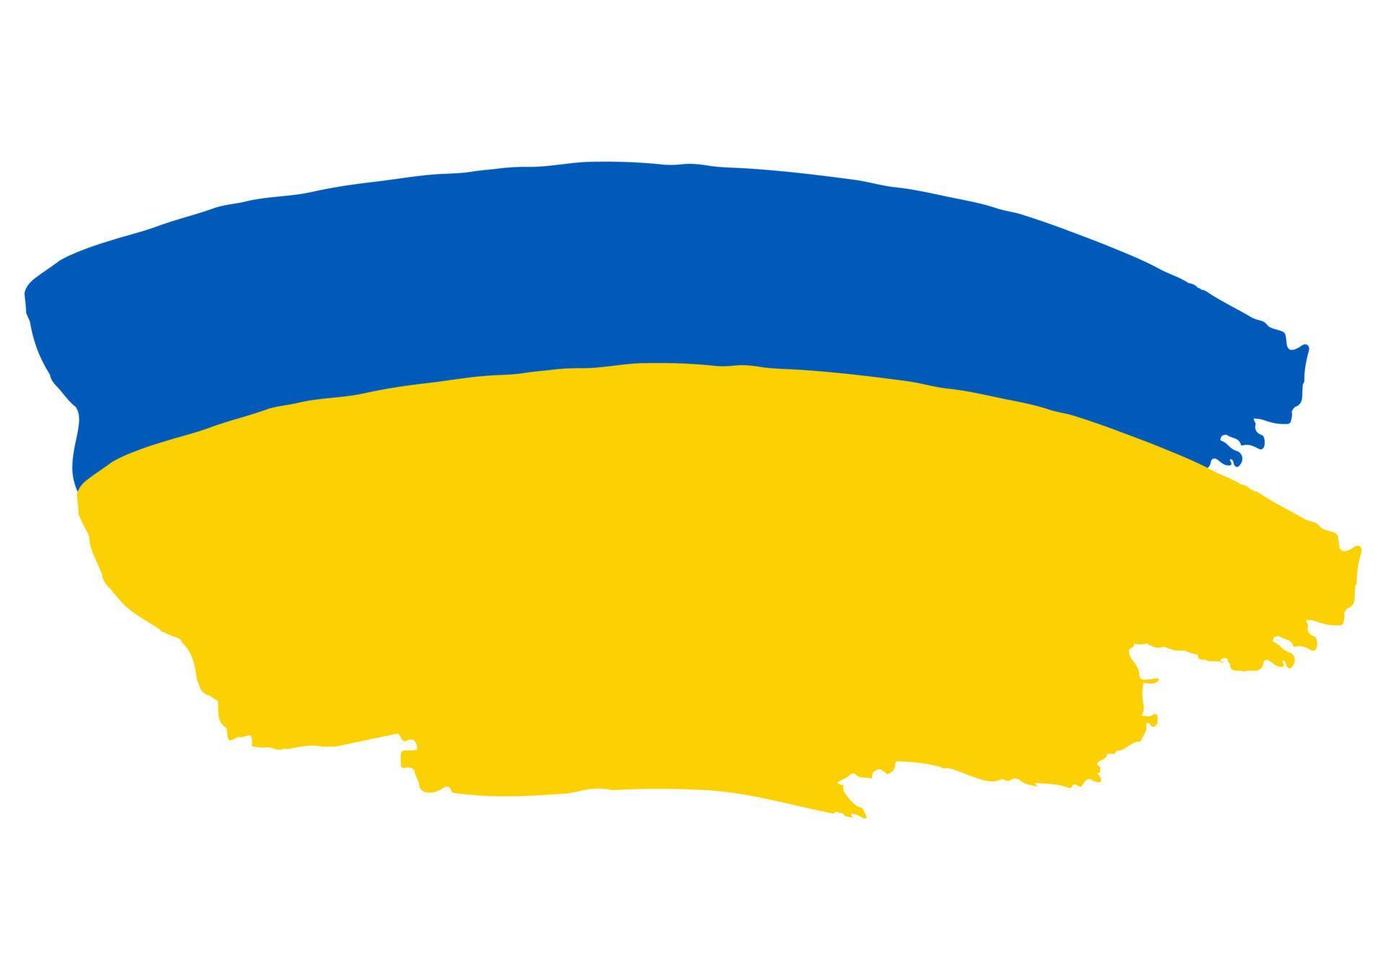 le drapeau de l'ukraine est peint avec de la peinture. peindre, tacher, tacher vecteur